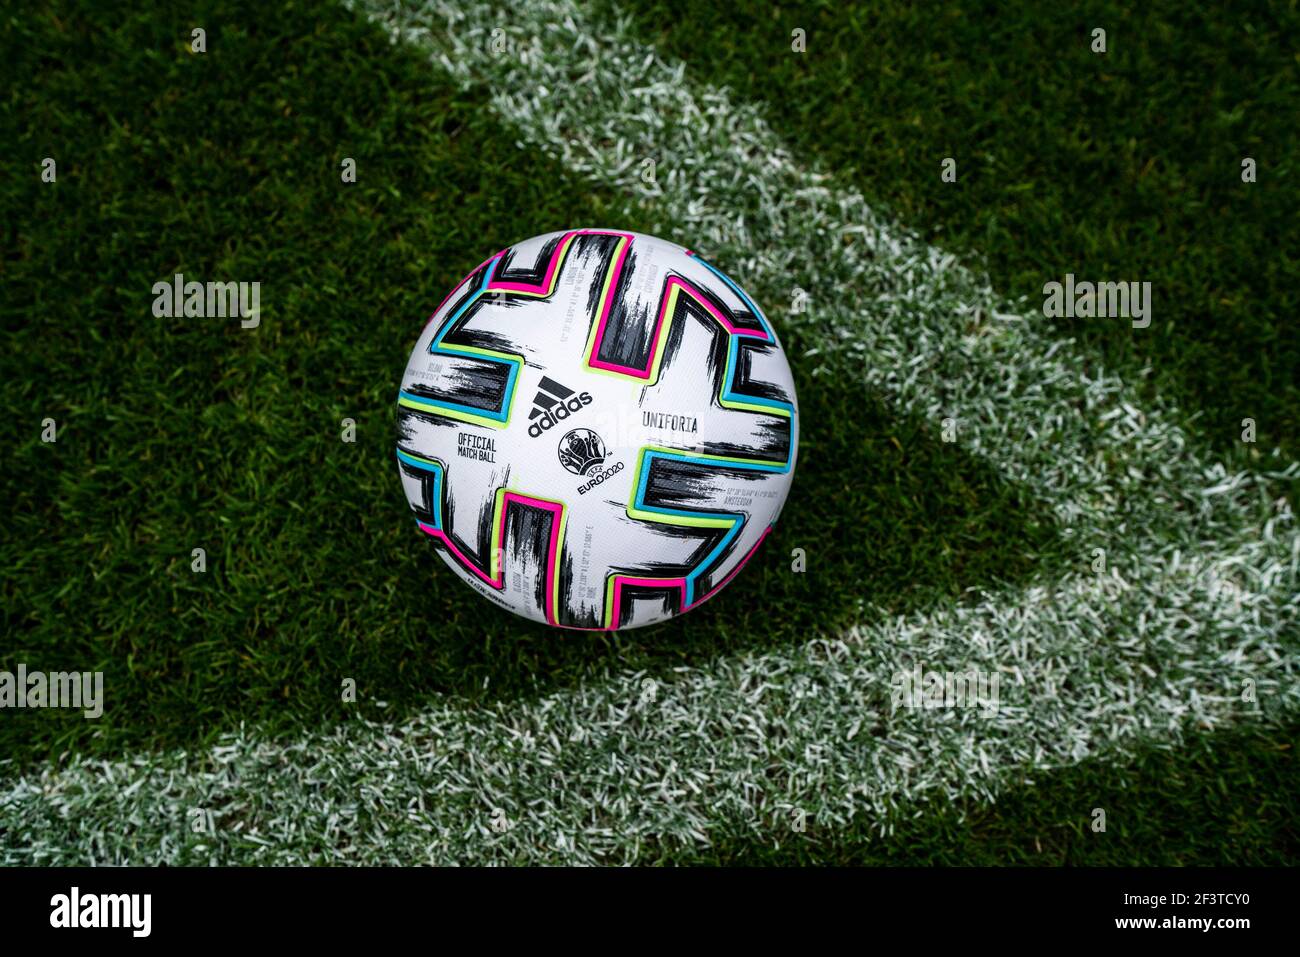 ‘Uniforia’ - la palla ufficiale per la partita UEFA EURO2020 by Adidas REDAZIONALE ONLY! Adidas via Kolvenbach Foto Stock